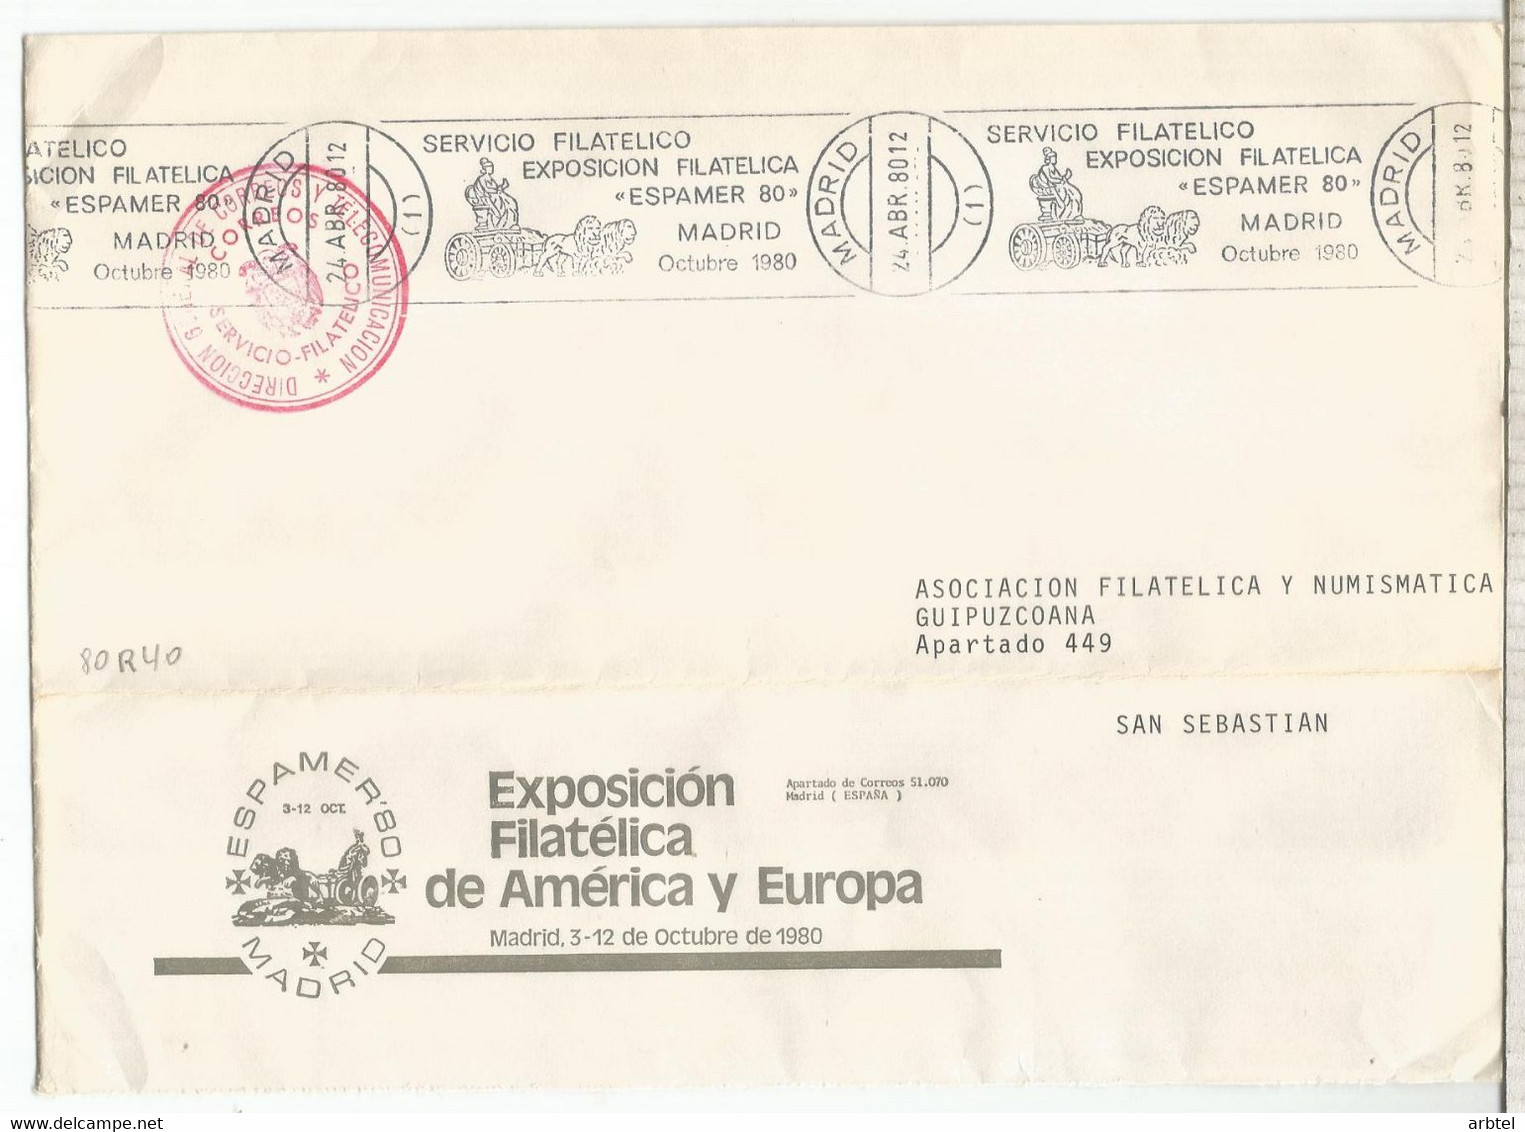 MADRID CC FRANQUICIA SERVICIO FILATELICO MAT RODILLO ESPAMER 80 CIBELES - Franquicia Postal